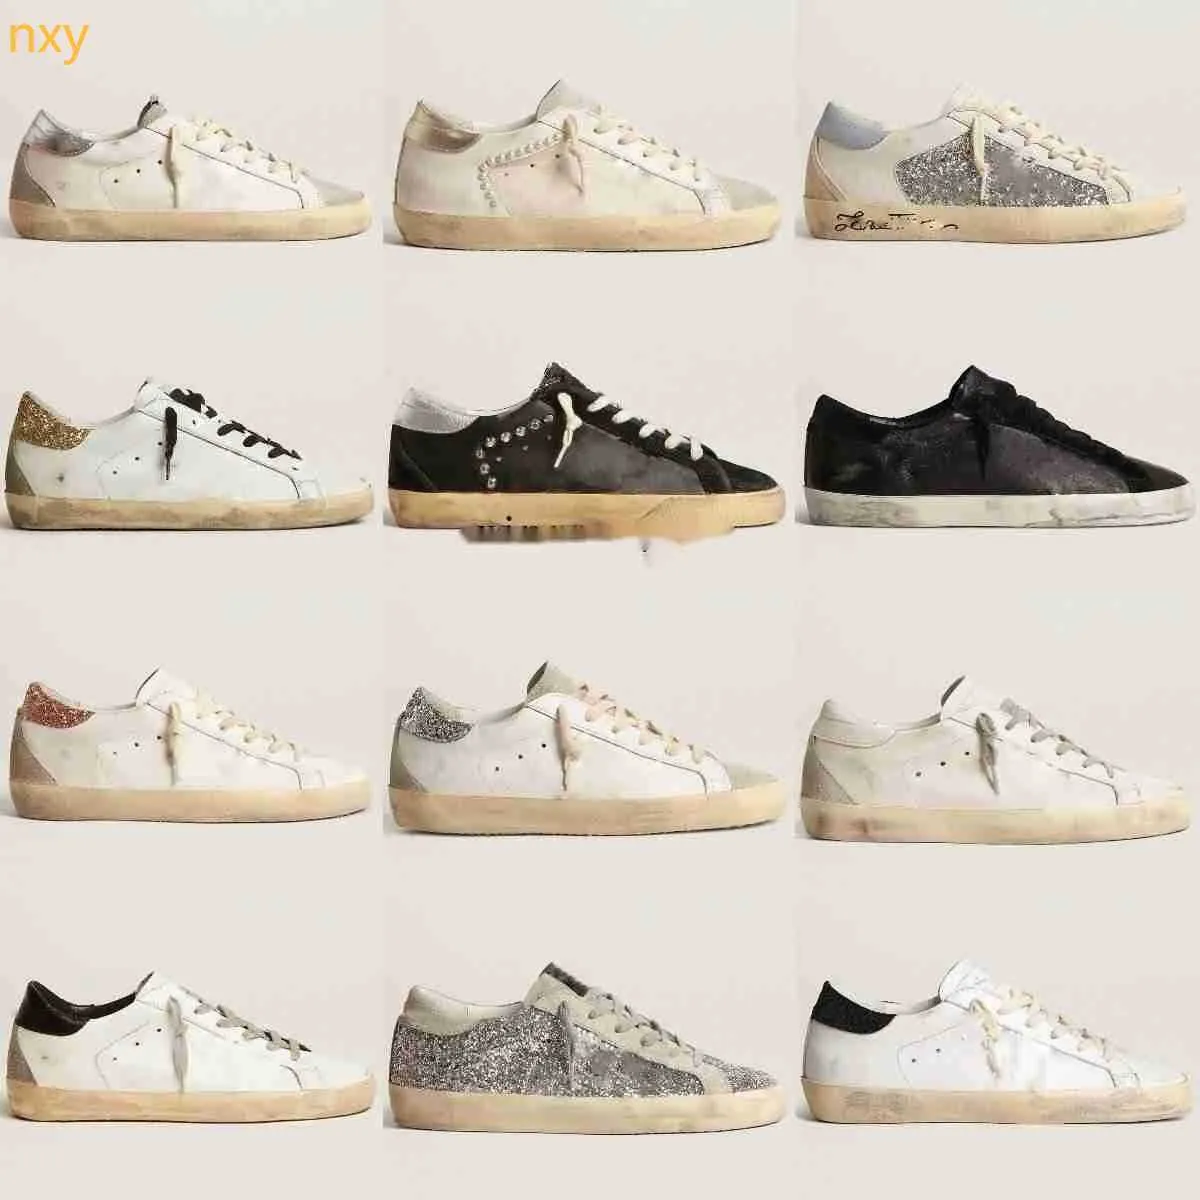 Designerskie buty kobiety Sneaker Włochy marka klasyczna biała, brudna fabryka butów